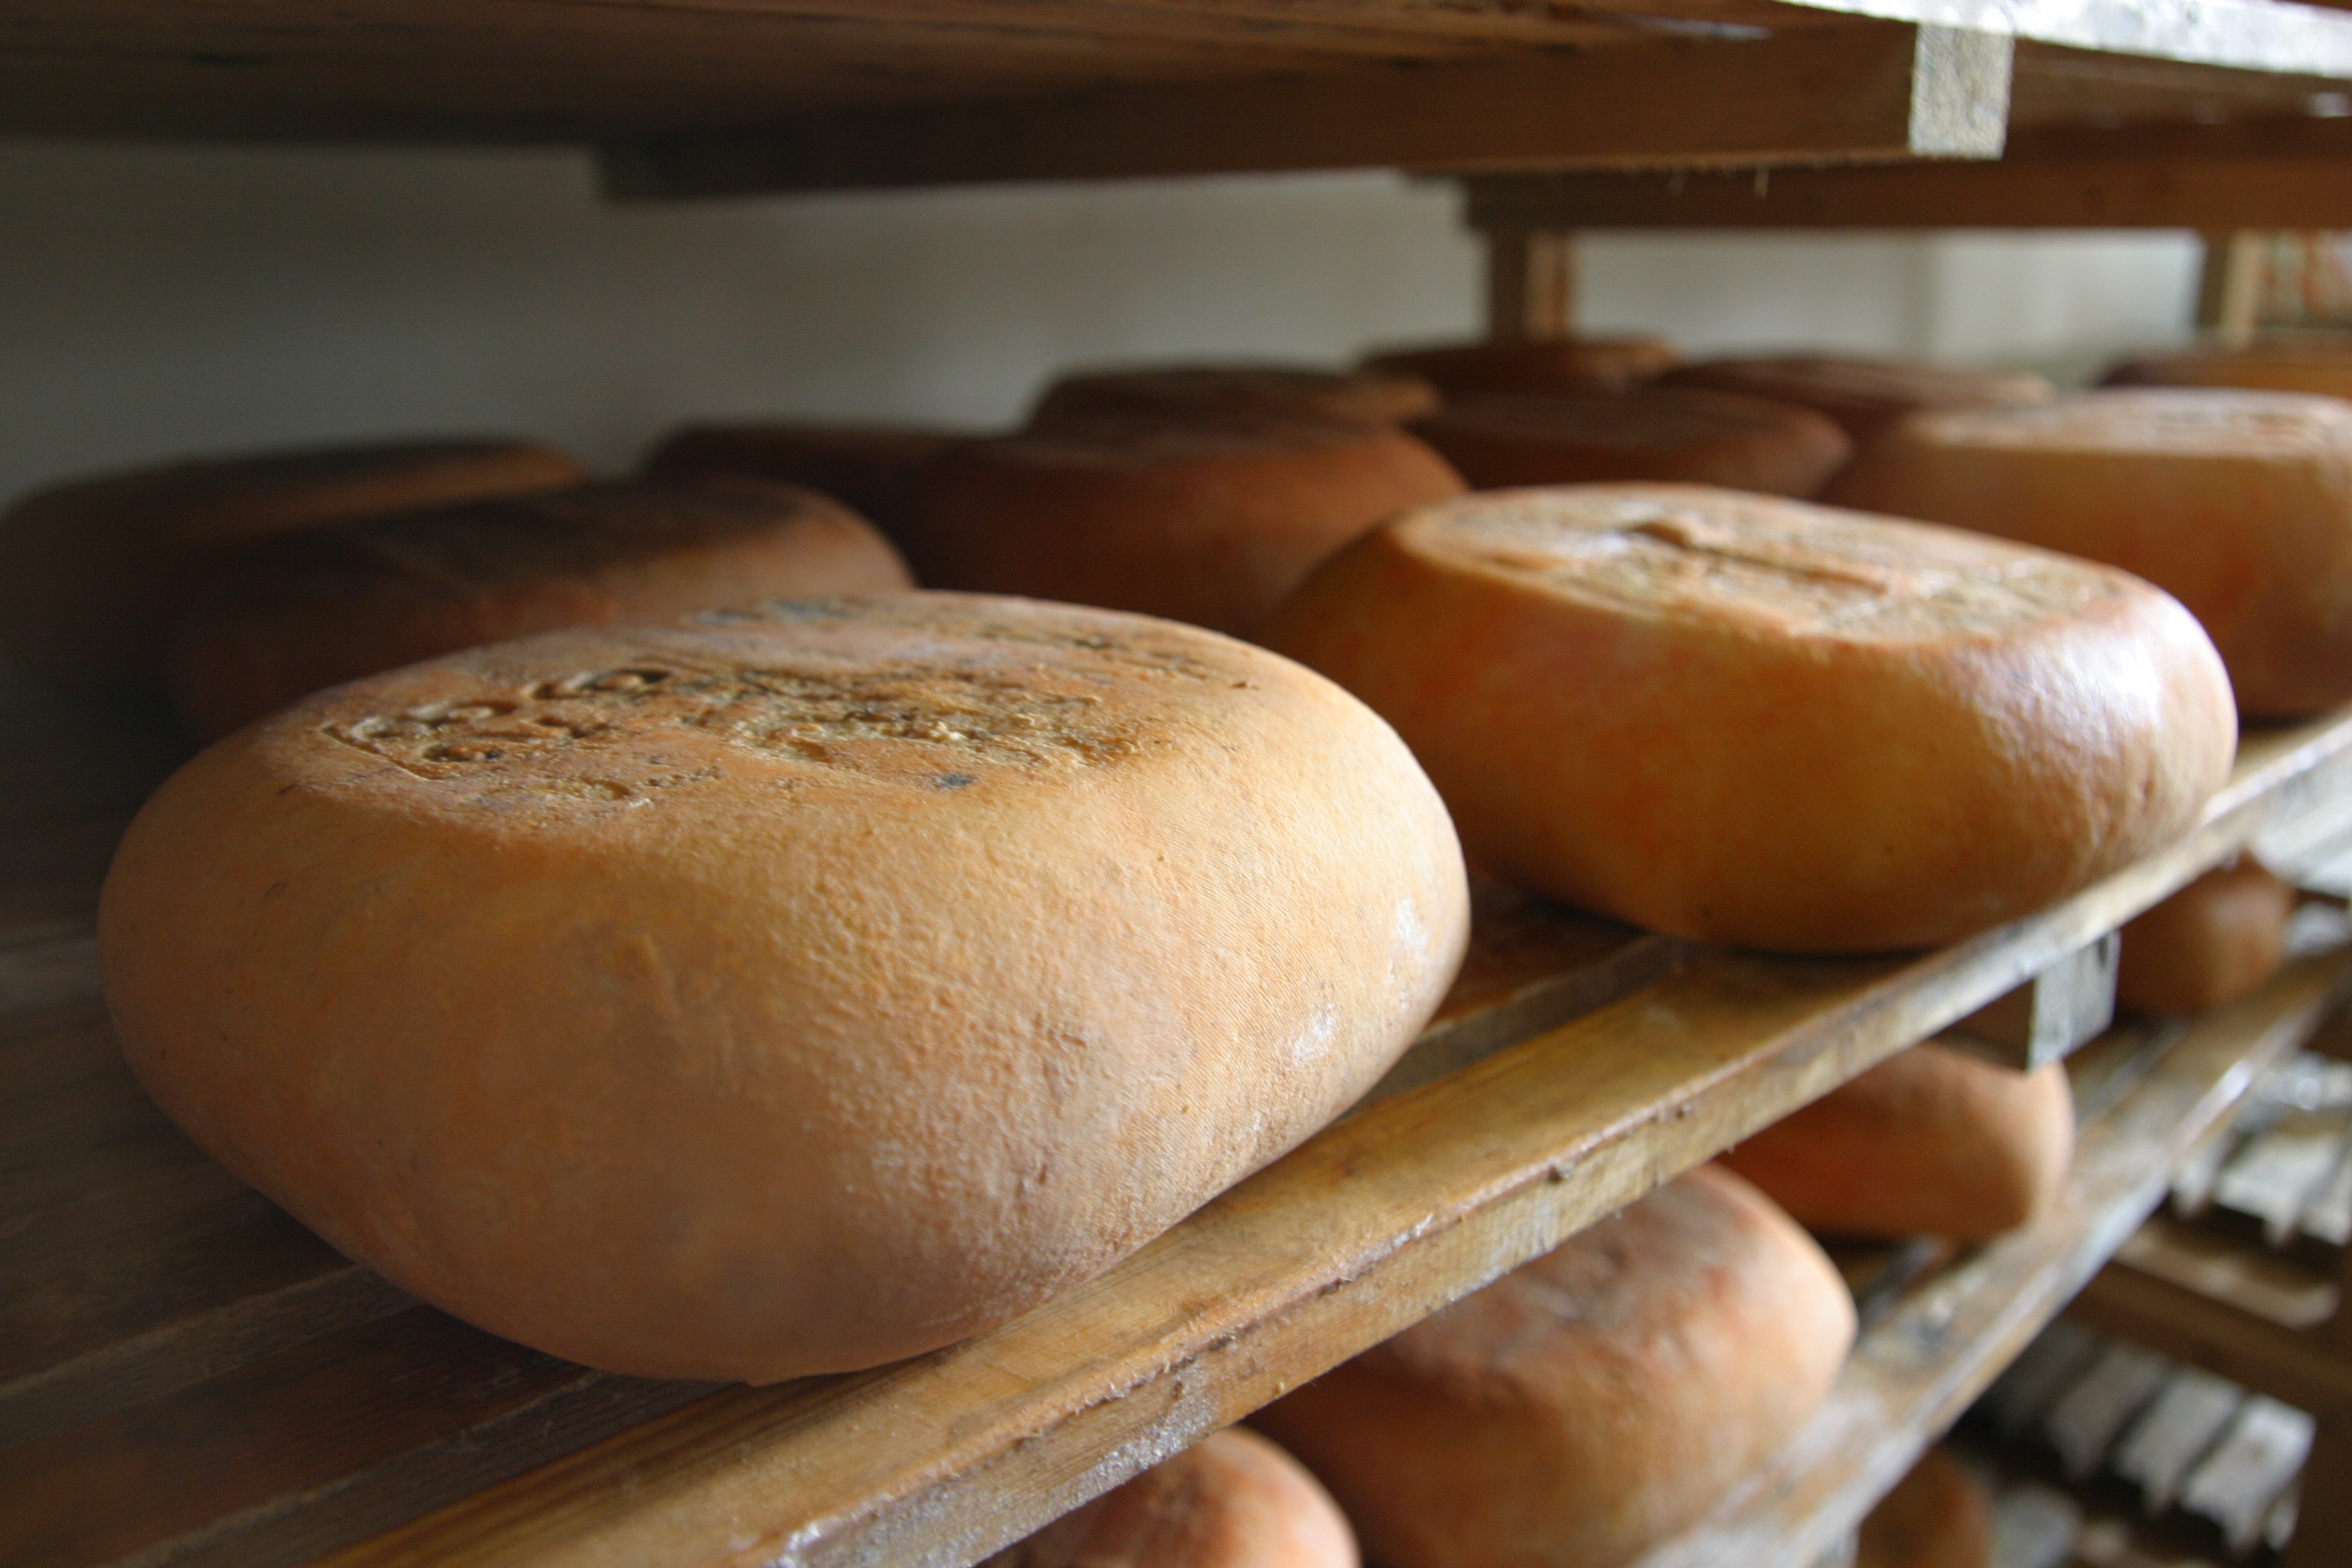 El formatge Mahón-Menorca és una font natural de calci - Notícies - Illes Balears - Productes agroalimentaris, denominacions d'origen i gastronomia balear